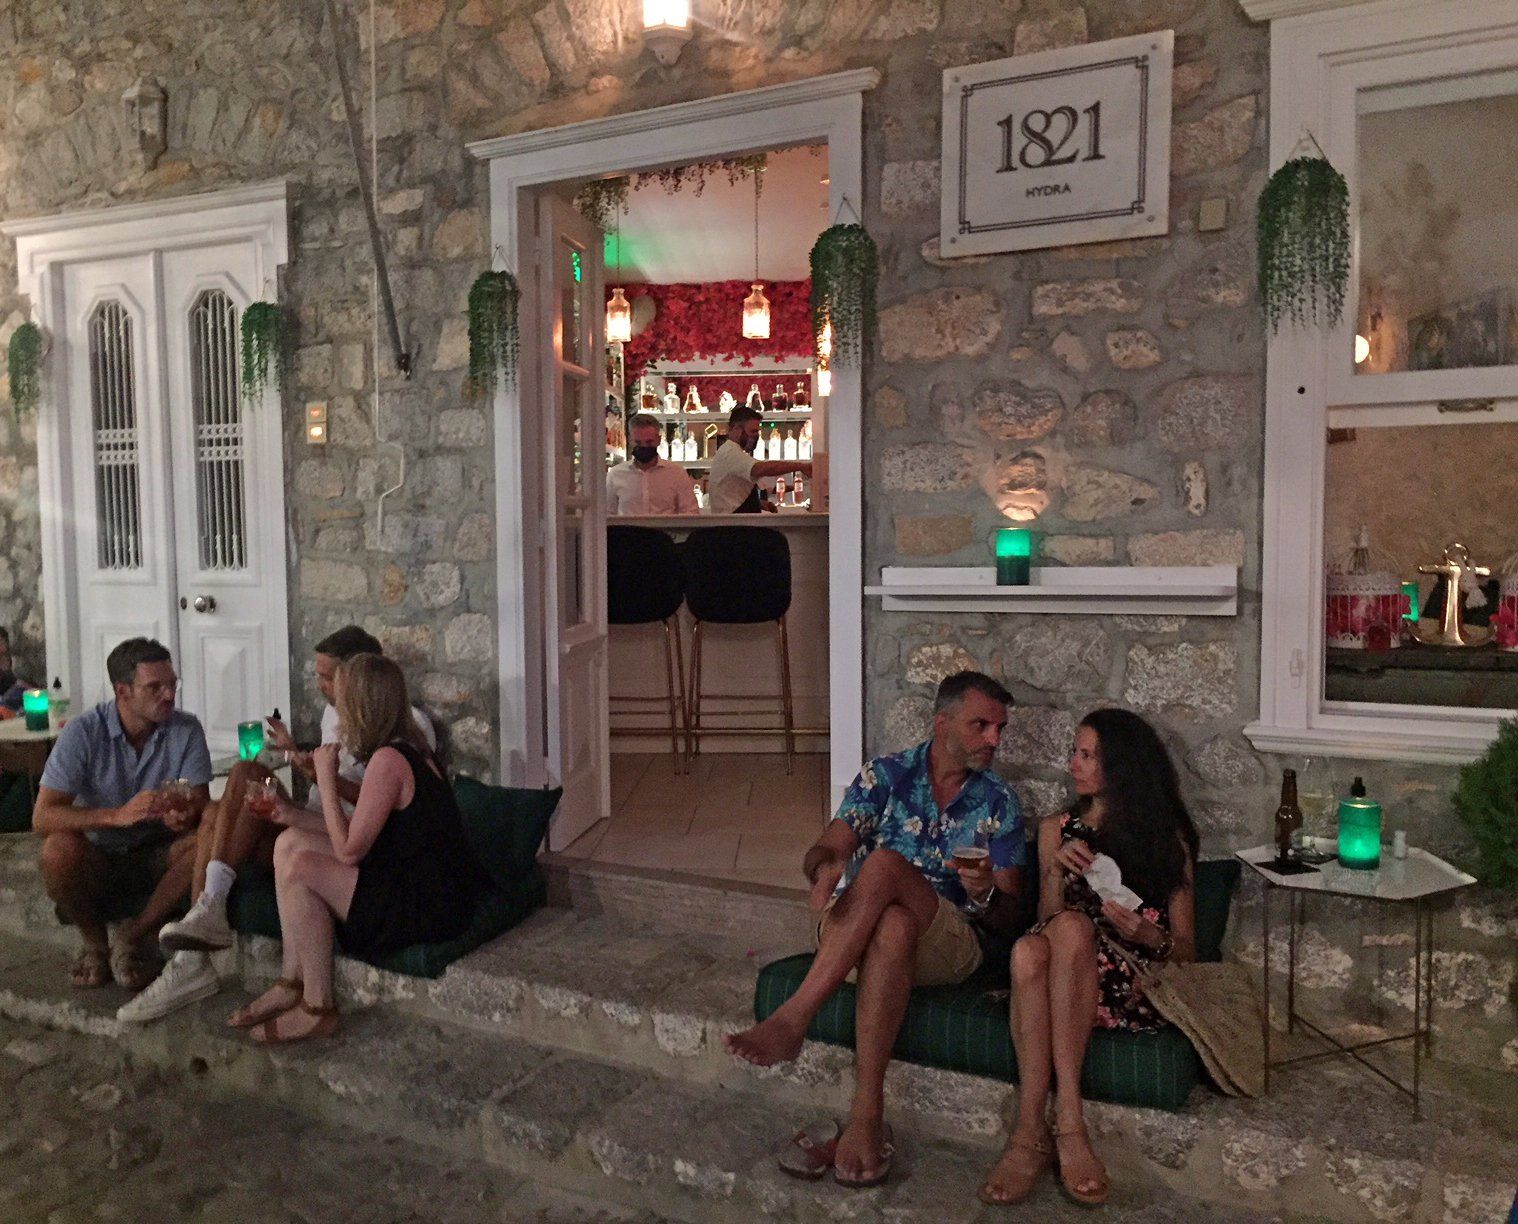 1821 Bar on Hydra Island Greece